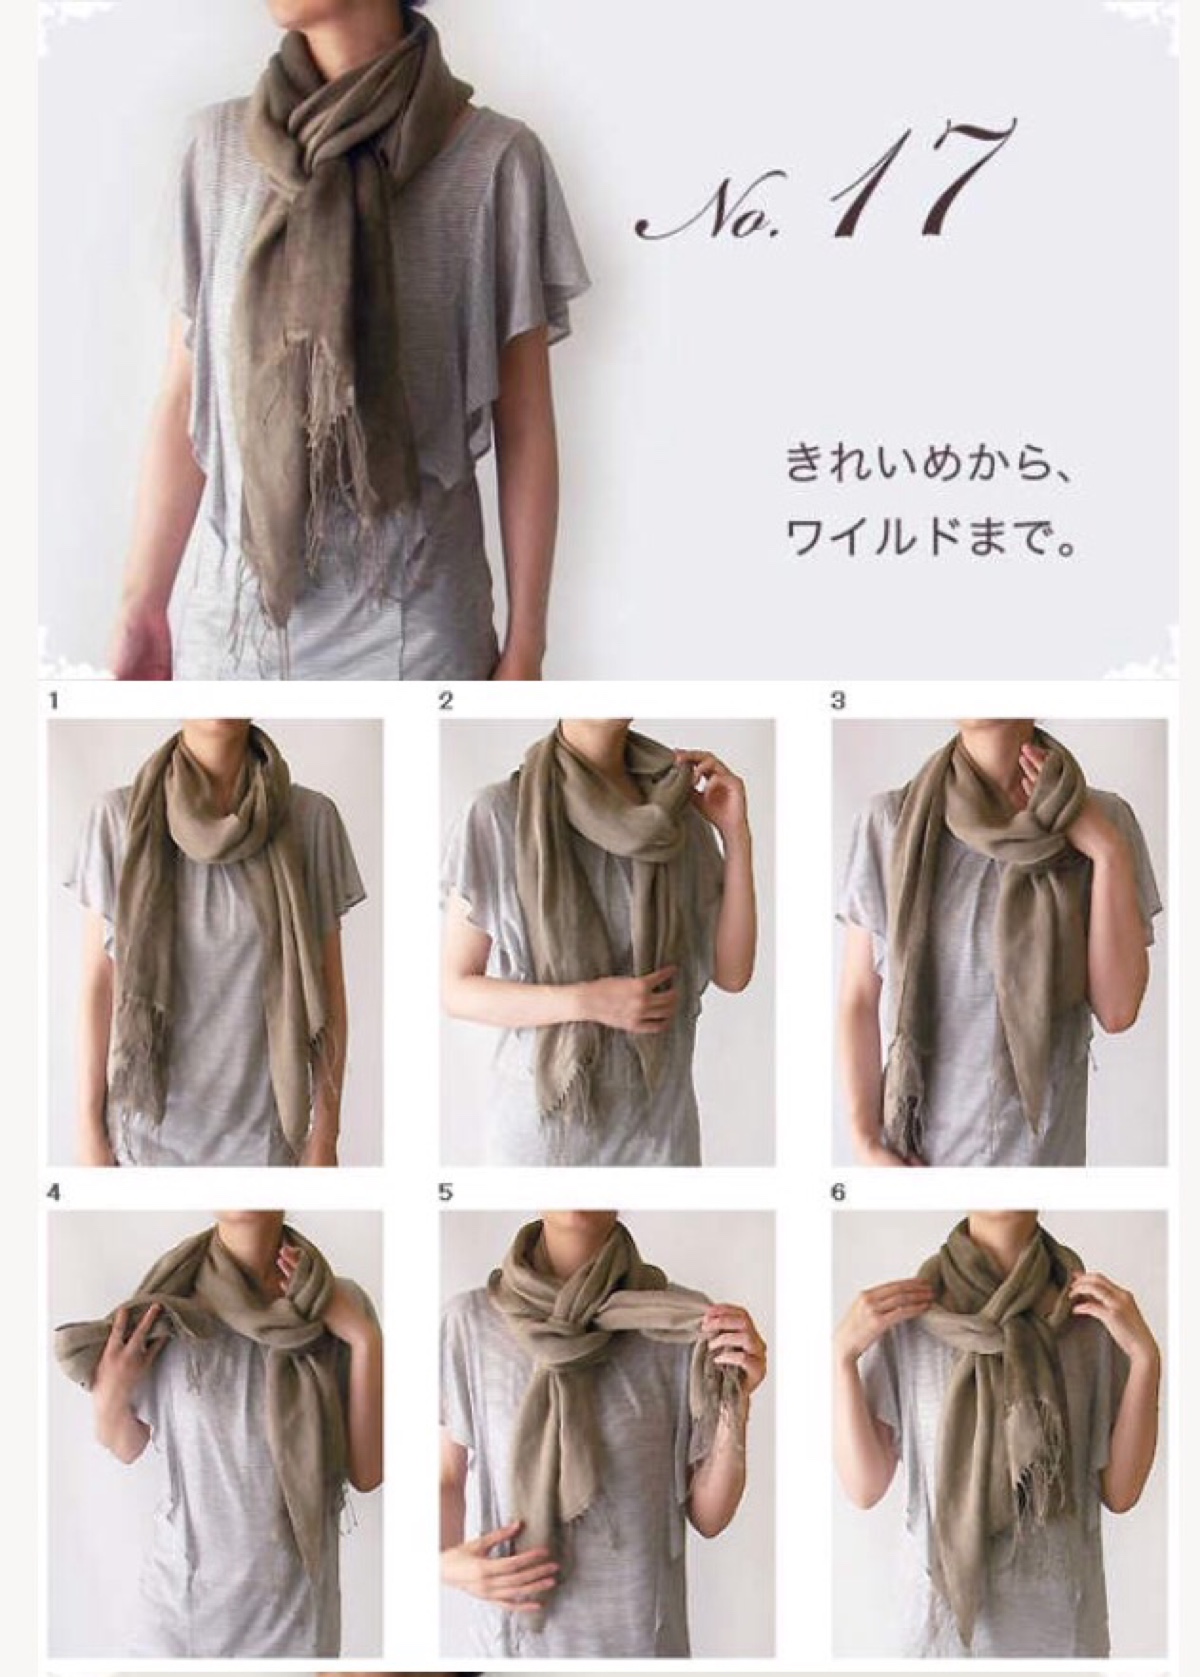 夏季围巾的各种围法图片